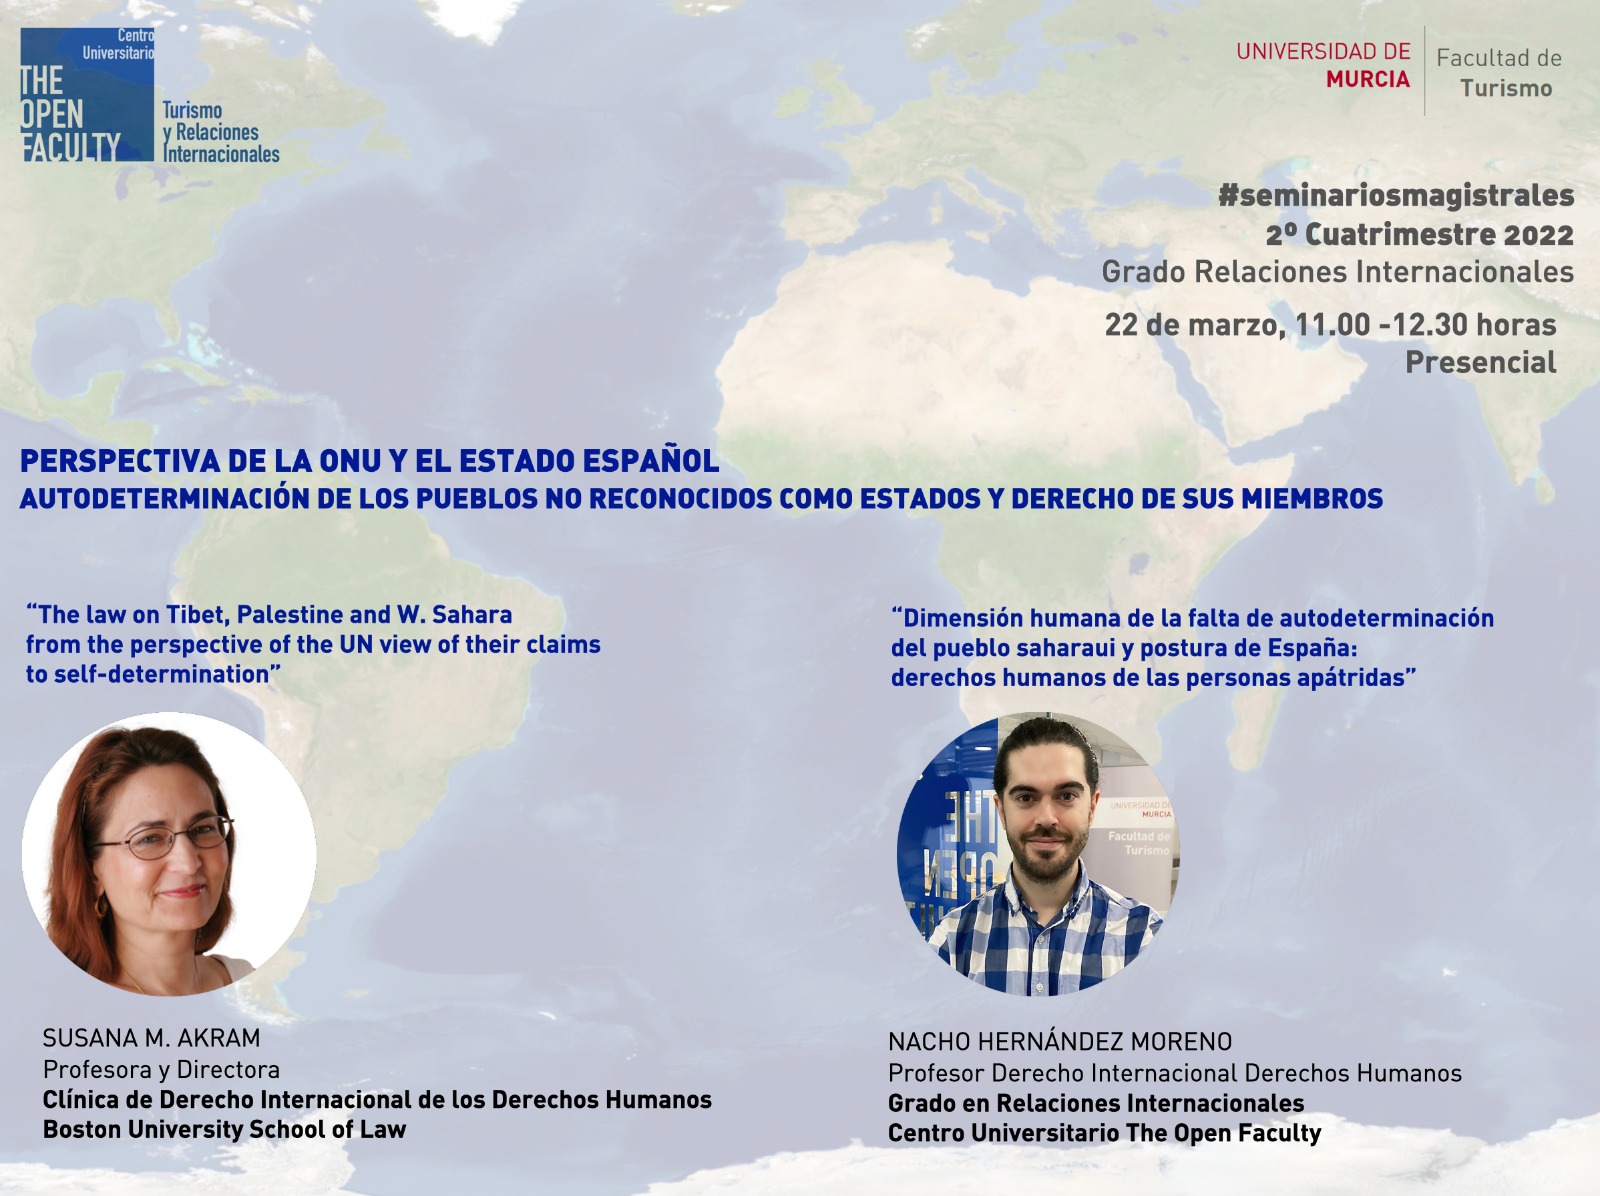 Nacho Hernández junto con Susana, imparten el seminario sobre la ONU y el estado español.